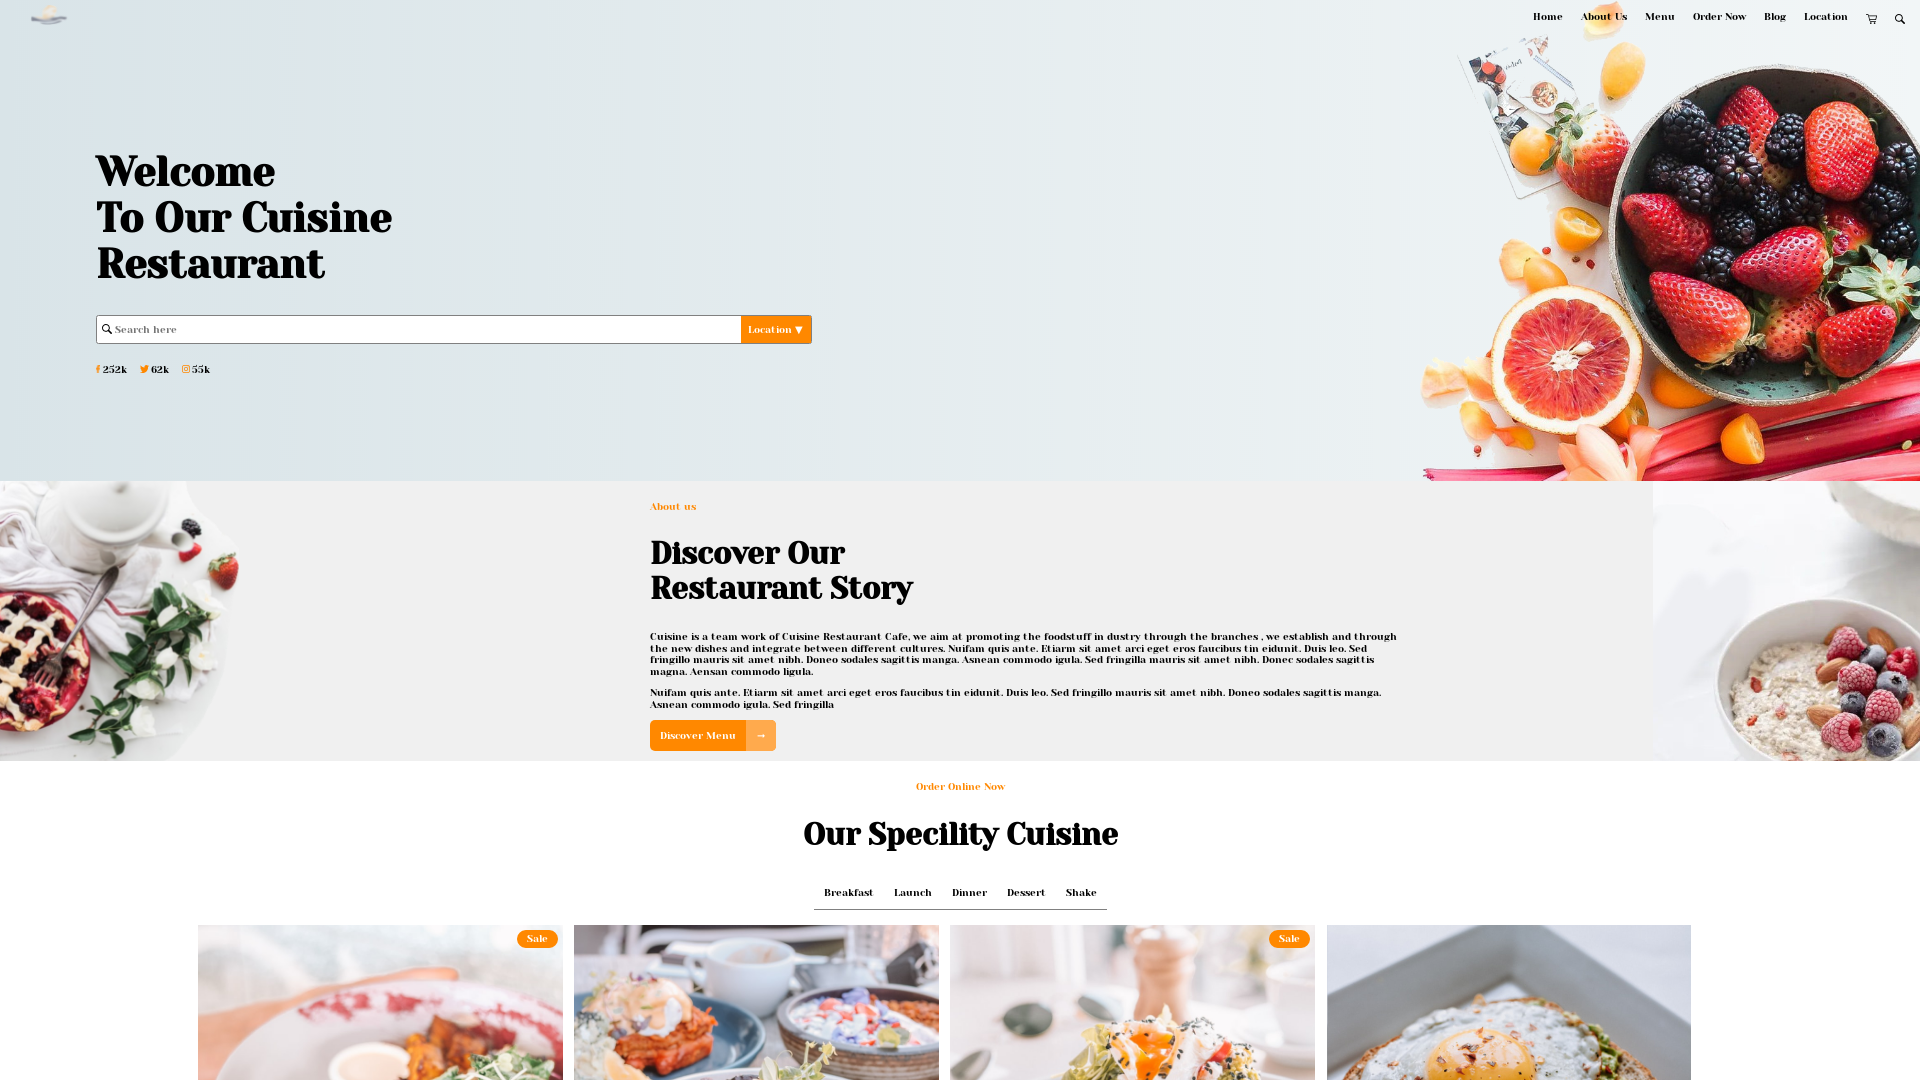 Website of a Cuisine Restaurant